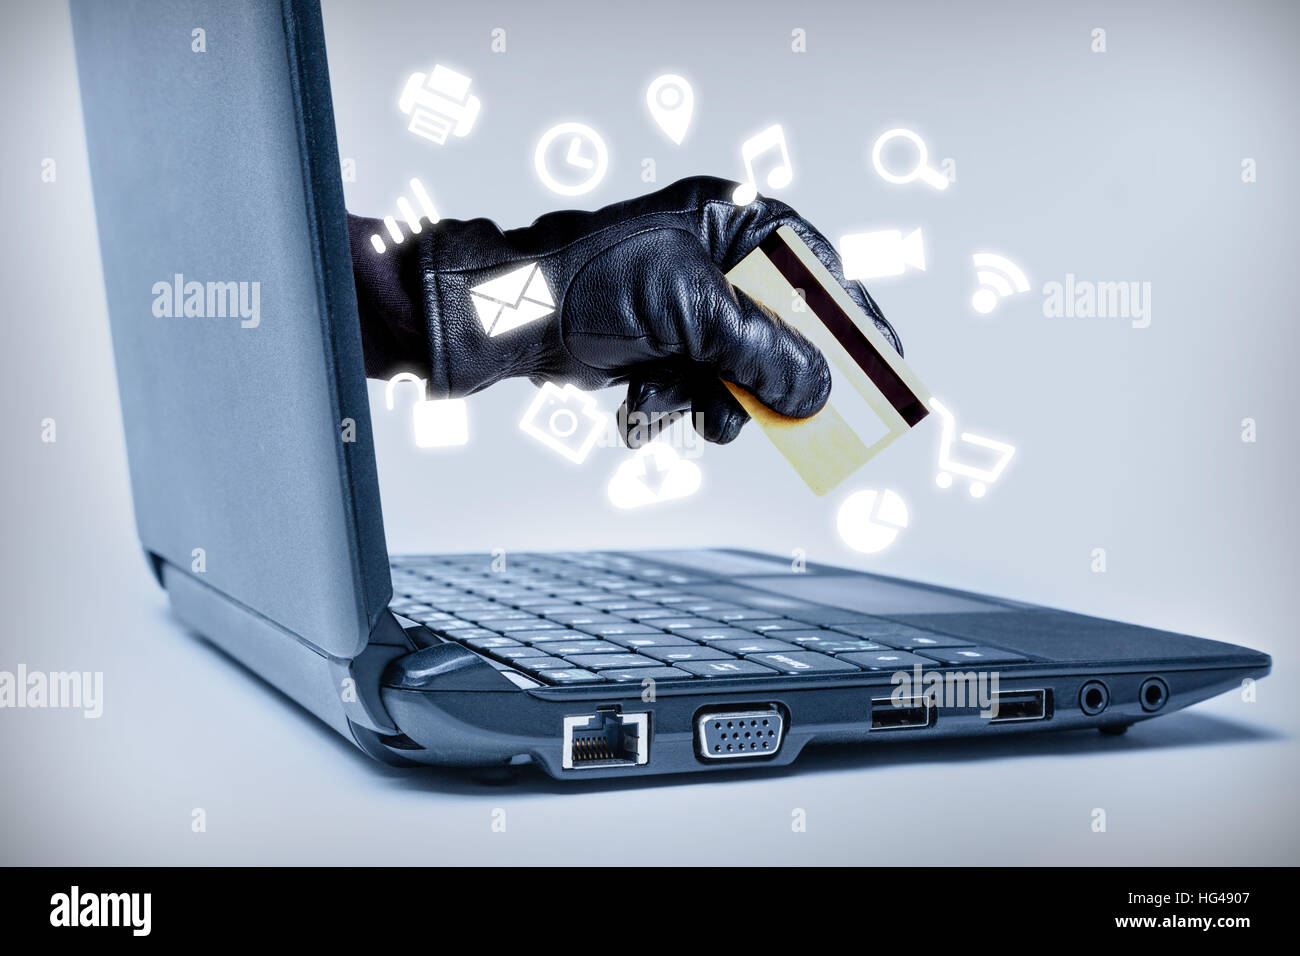 Eine behandschuhte Hand erreichen durch einen Laptop mit Debit- oder Kreditkarte mit gemeinsamen Media-Icons fließt, bedeutet ein Cybercrime oder Internet Diebstahl wh Stockfoto